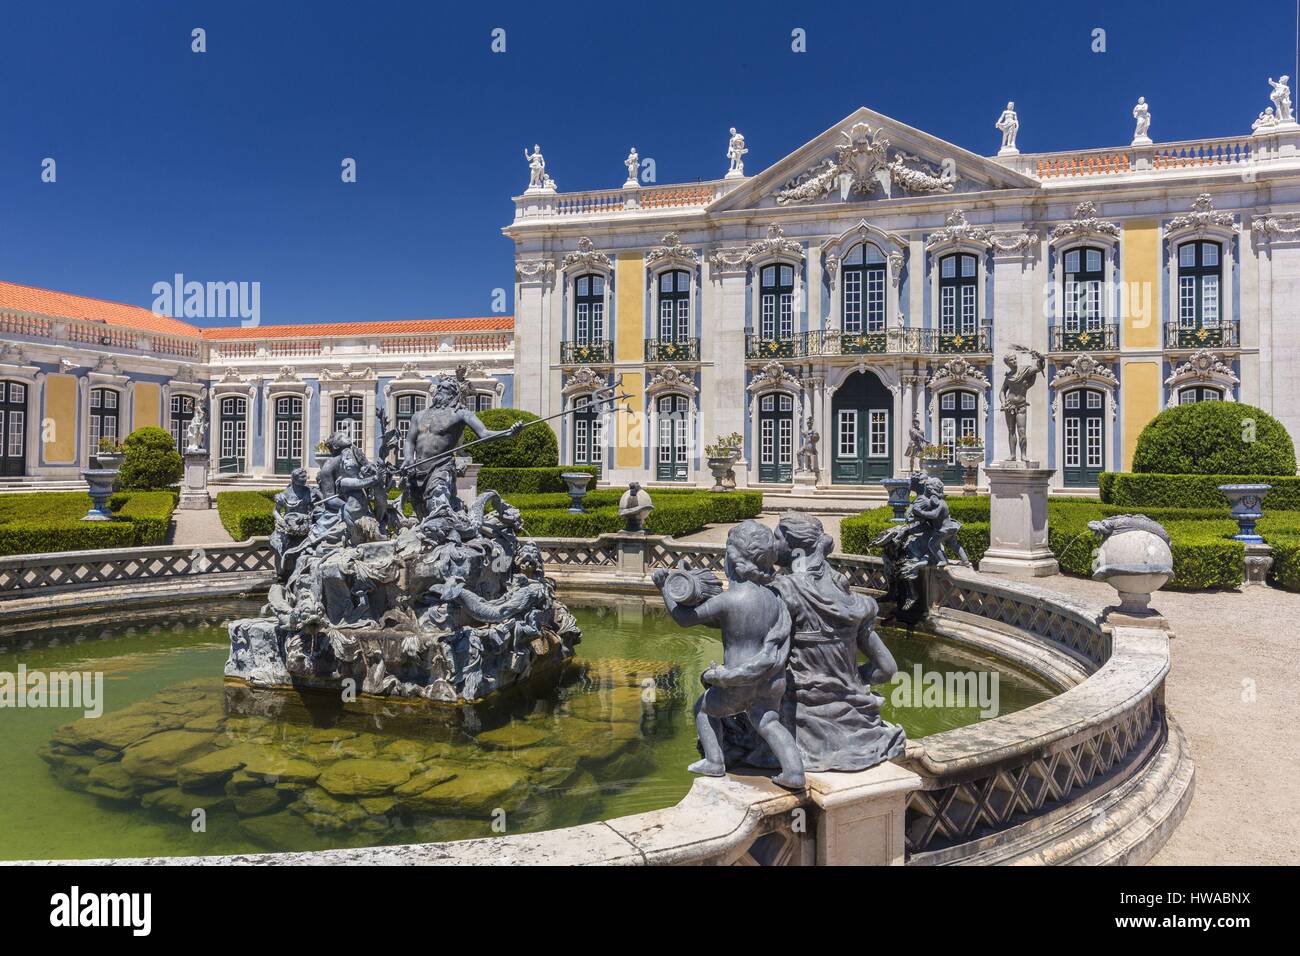 Portugal, région de Lisbonne, Queluz, le palais royal de Queluz (Palacio Real de Queluz) Banque D'Images